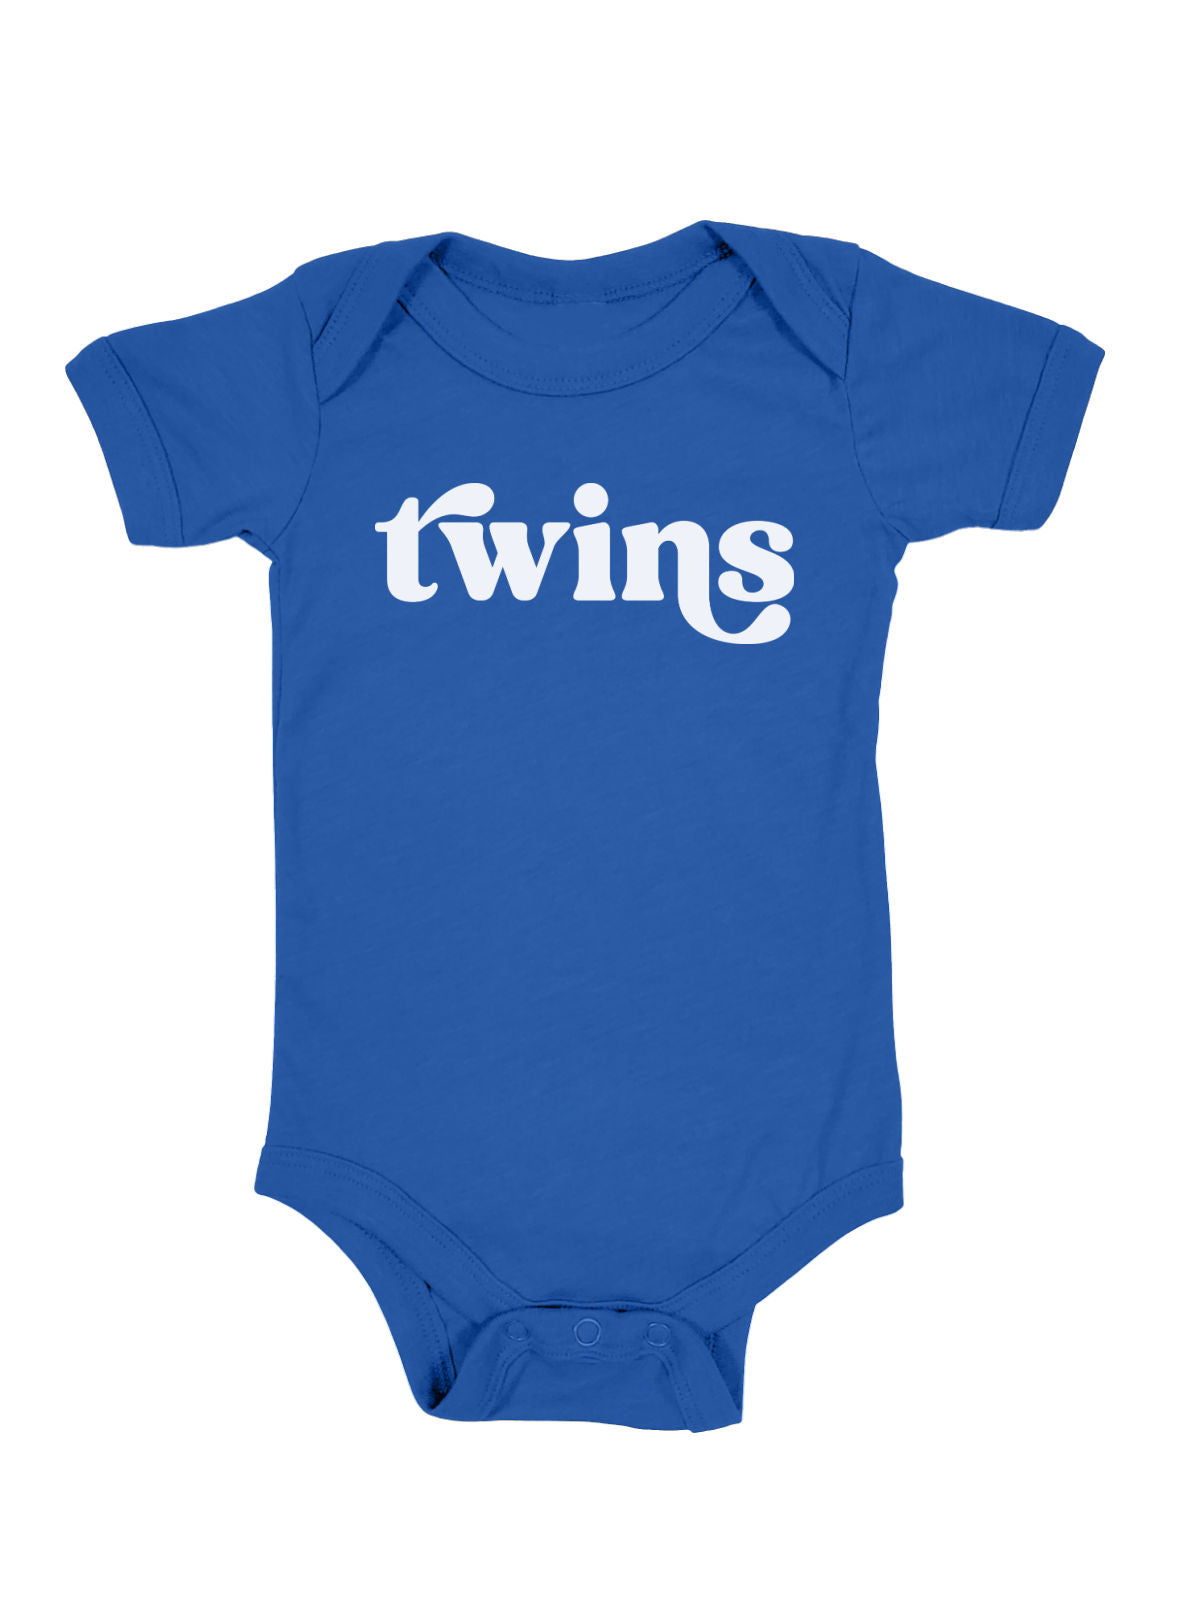 Twins Baby Bodysuit in Blue